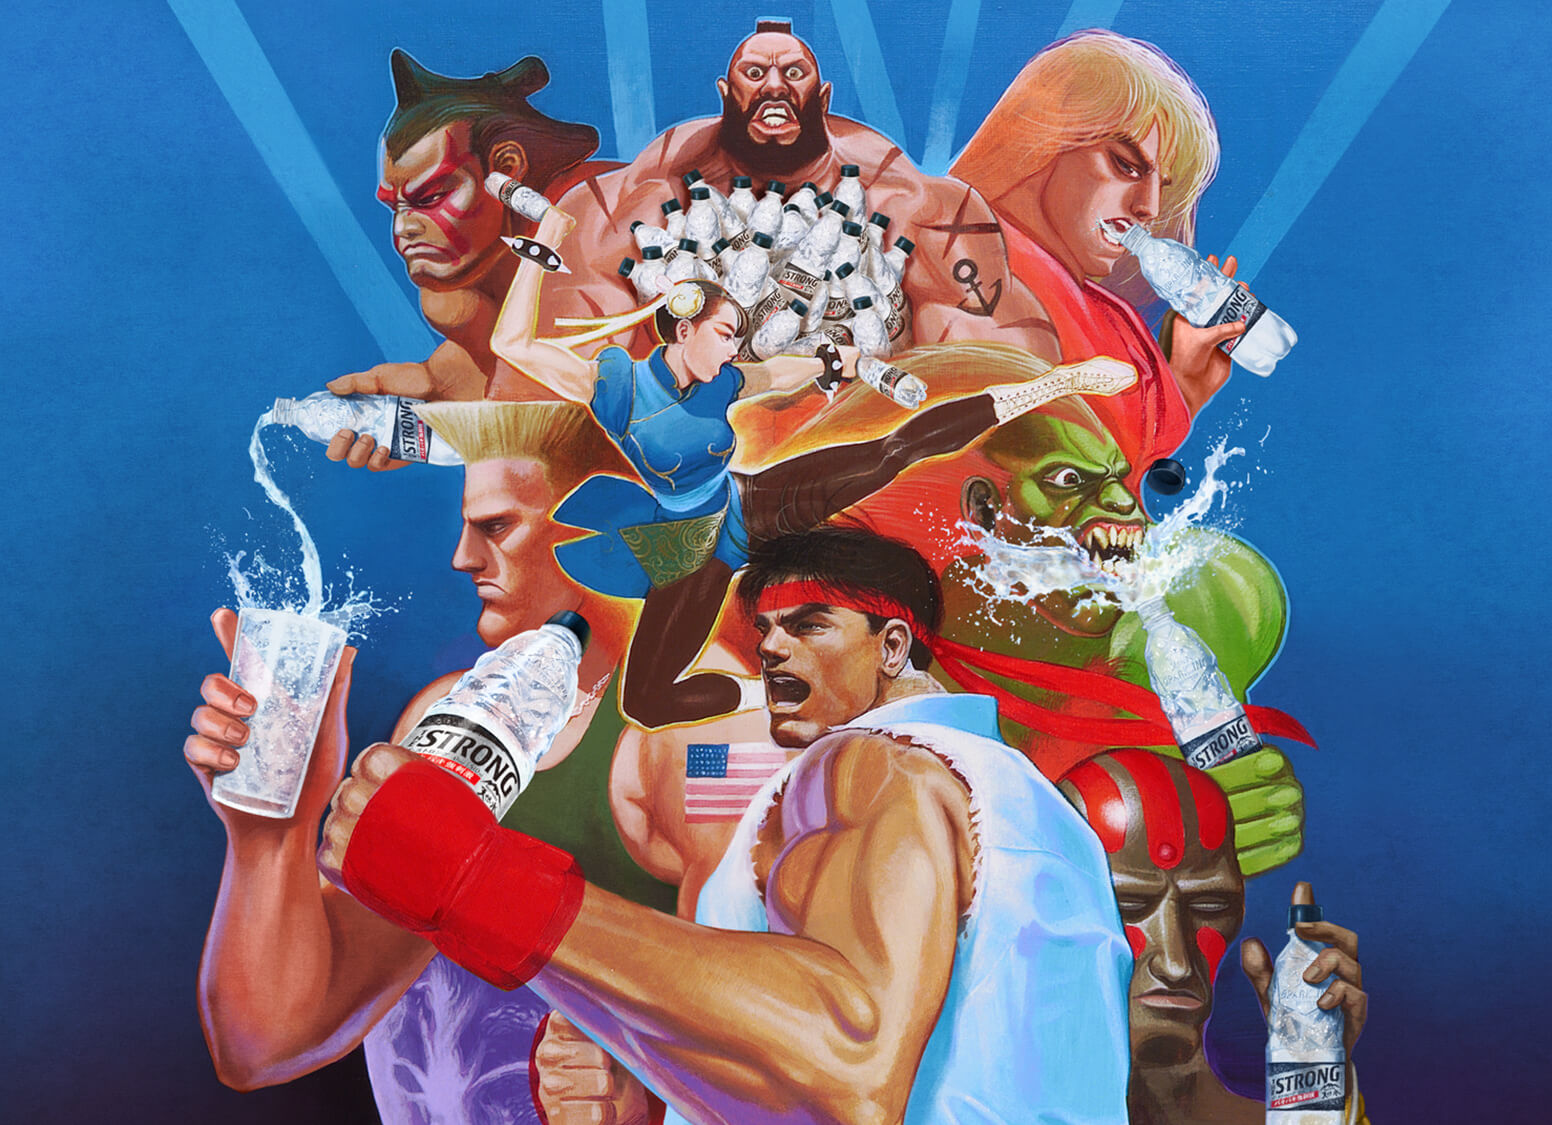 Una imagen promocional de la colaboración de The Strong Fighter II entre el videojuego Street Fighter II de Capcom y el producto de agua con gas THE STRONG de Suntory, con ilustraciones de E. Honda, Zangief, Ken, Guile, Chun Li, Blanka, Ryu y Dhalsim disfrutando de refrescantes botellas de STRONG agua con gas.